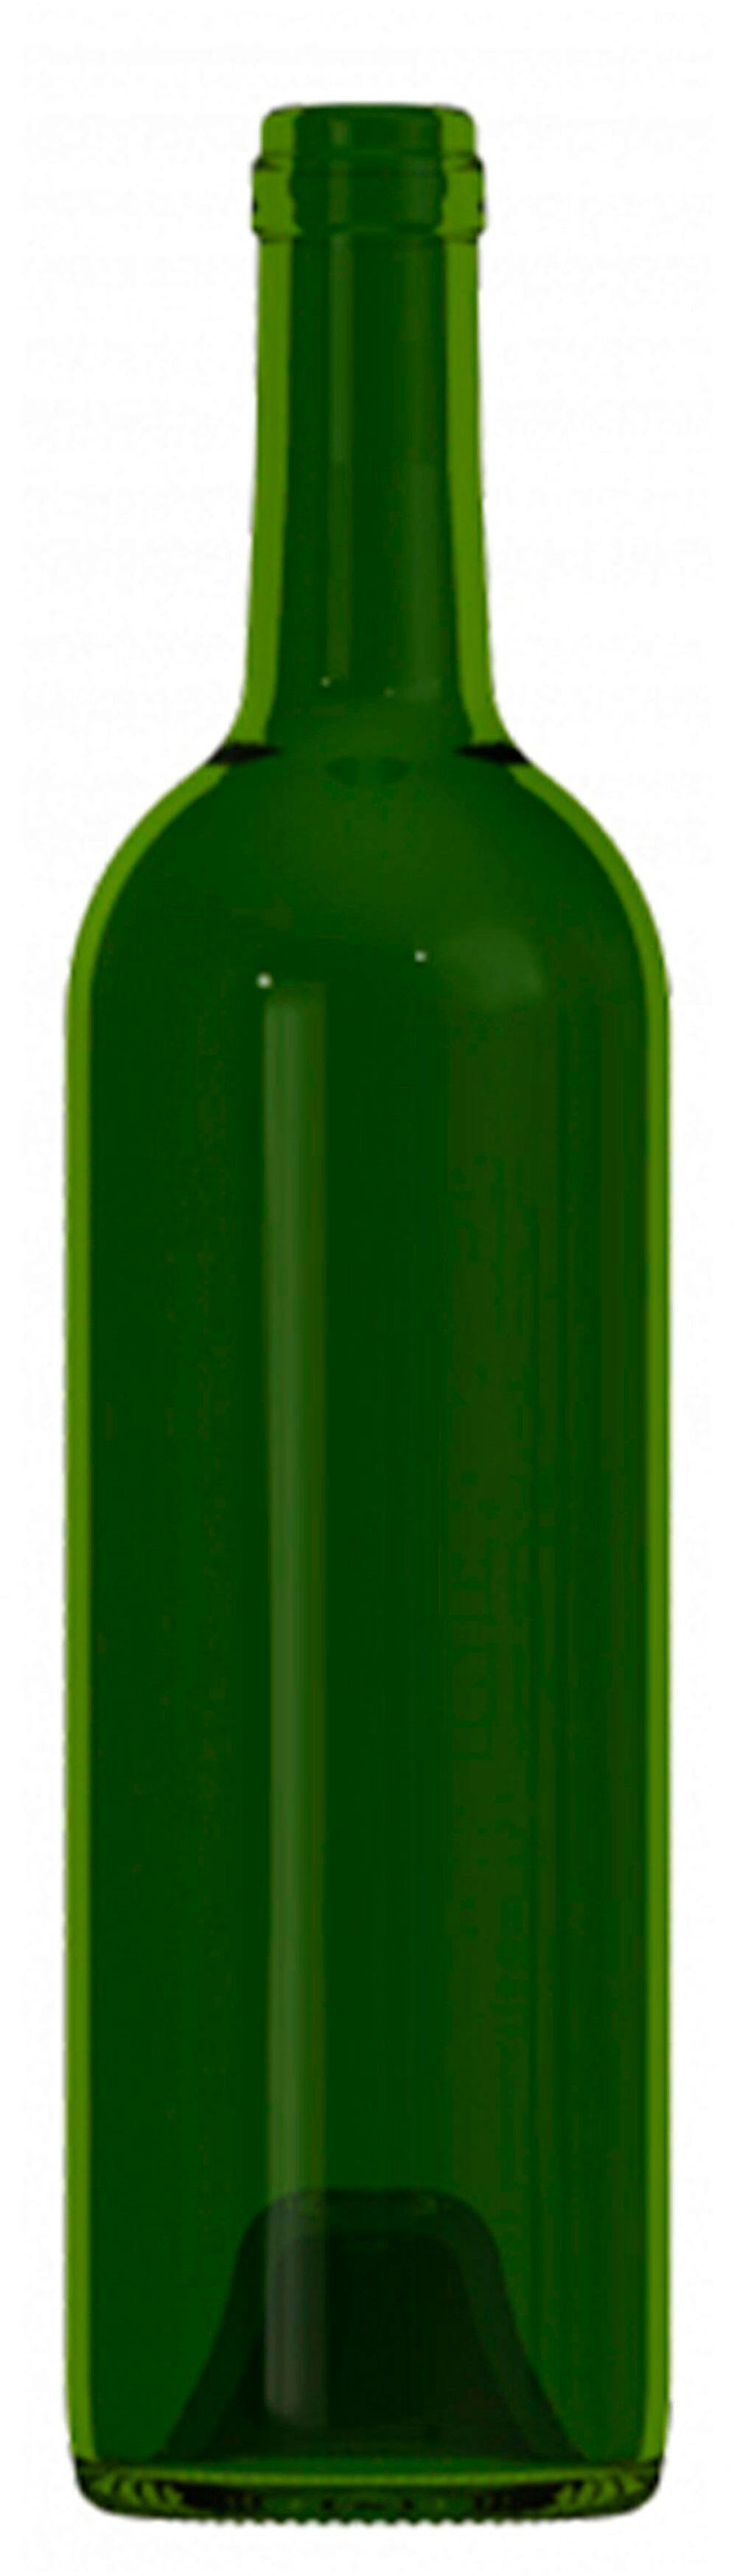 Bottiglia bordolese   MED 750 ml BG-Sughero